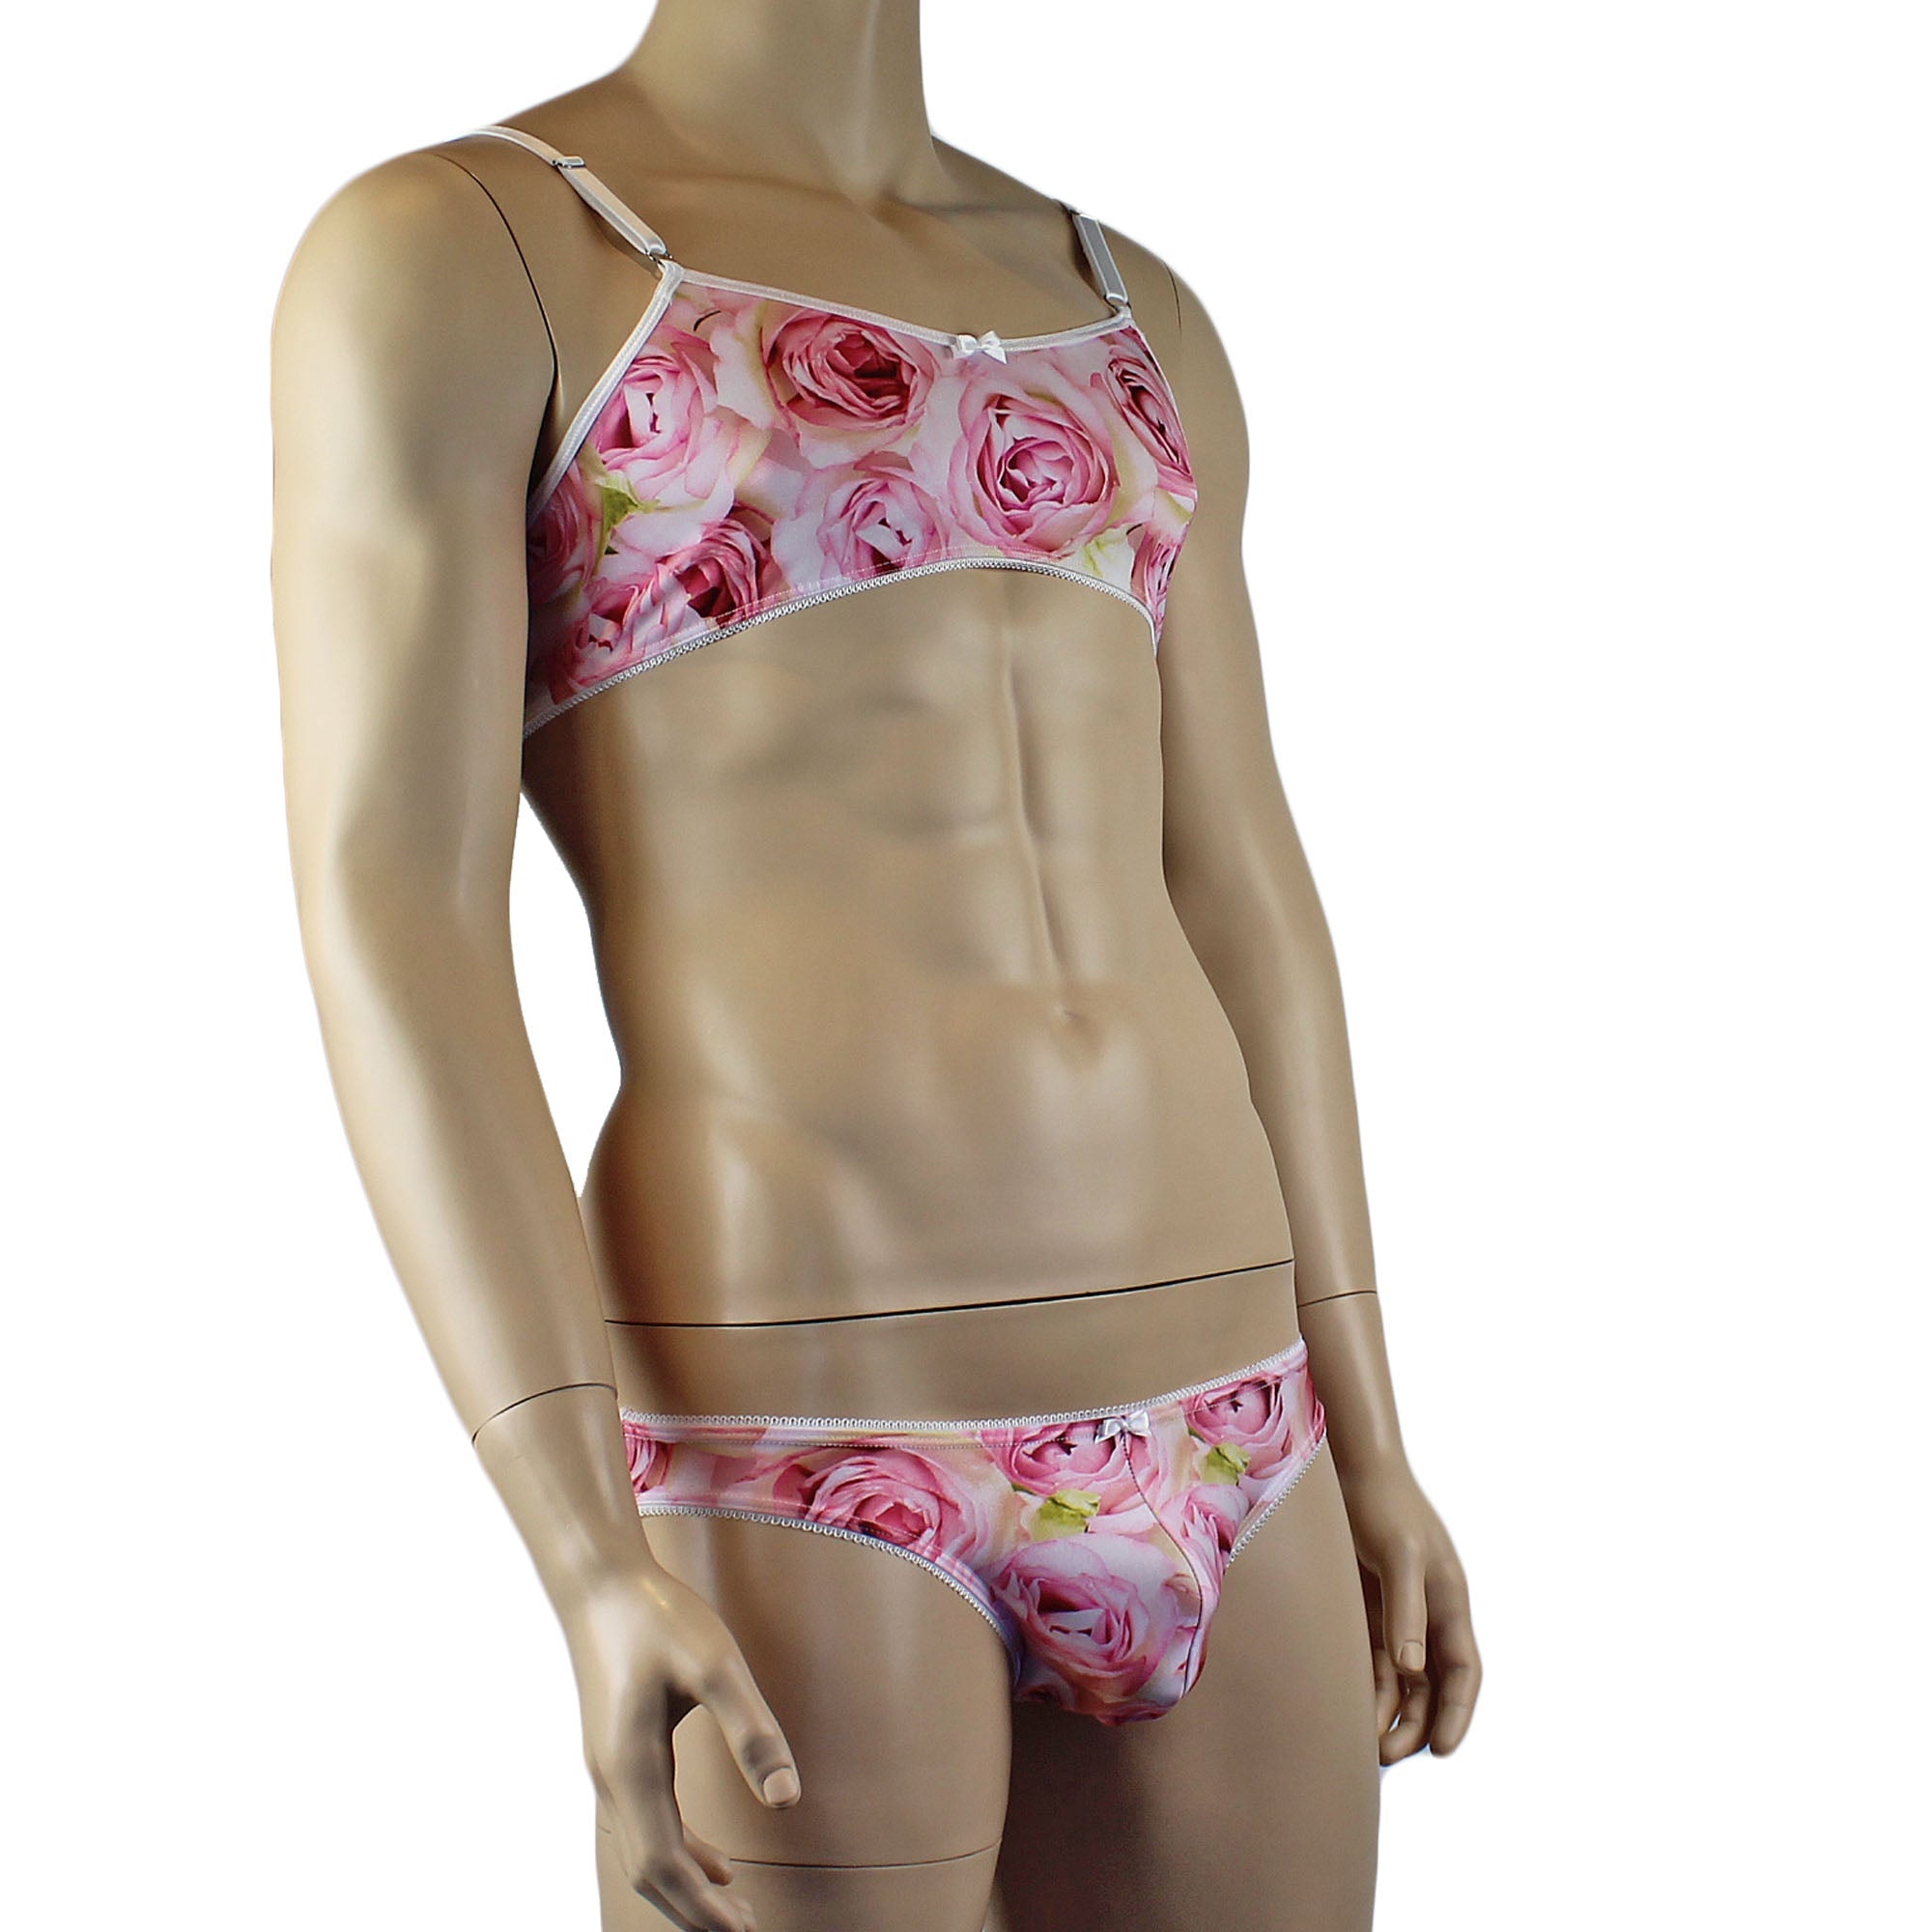 Mens Roses Spandex Bra Top and Bikini Brief with Elastic Pico Trim Pink